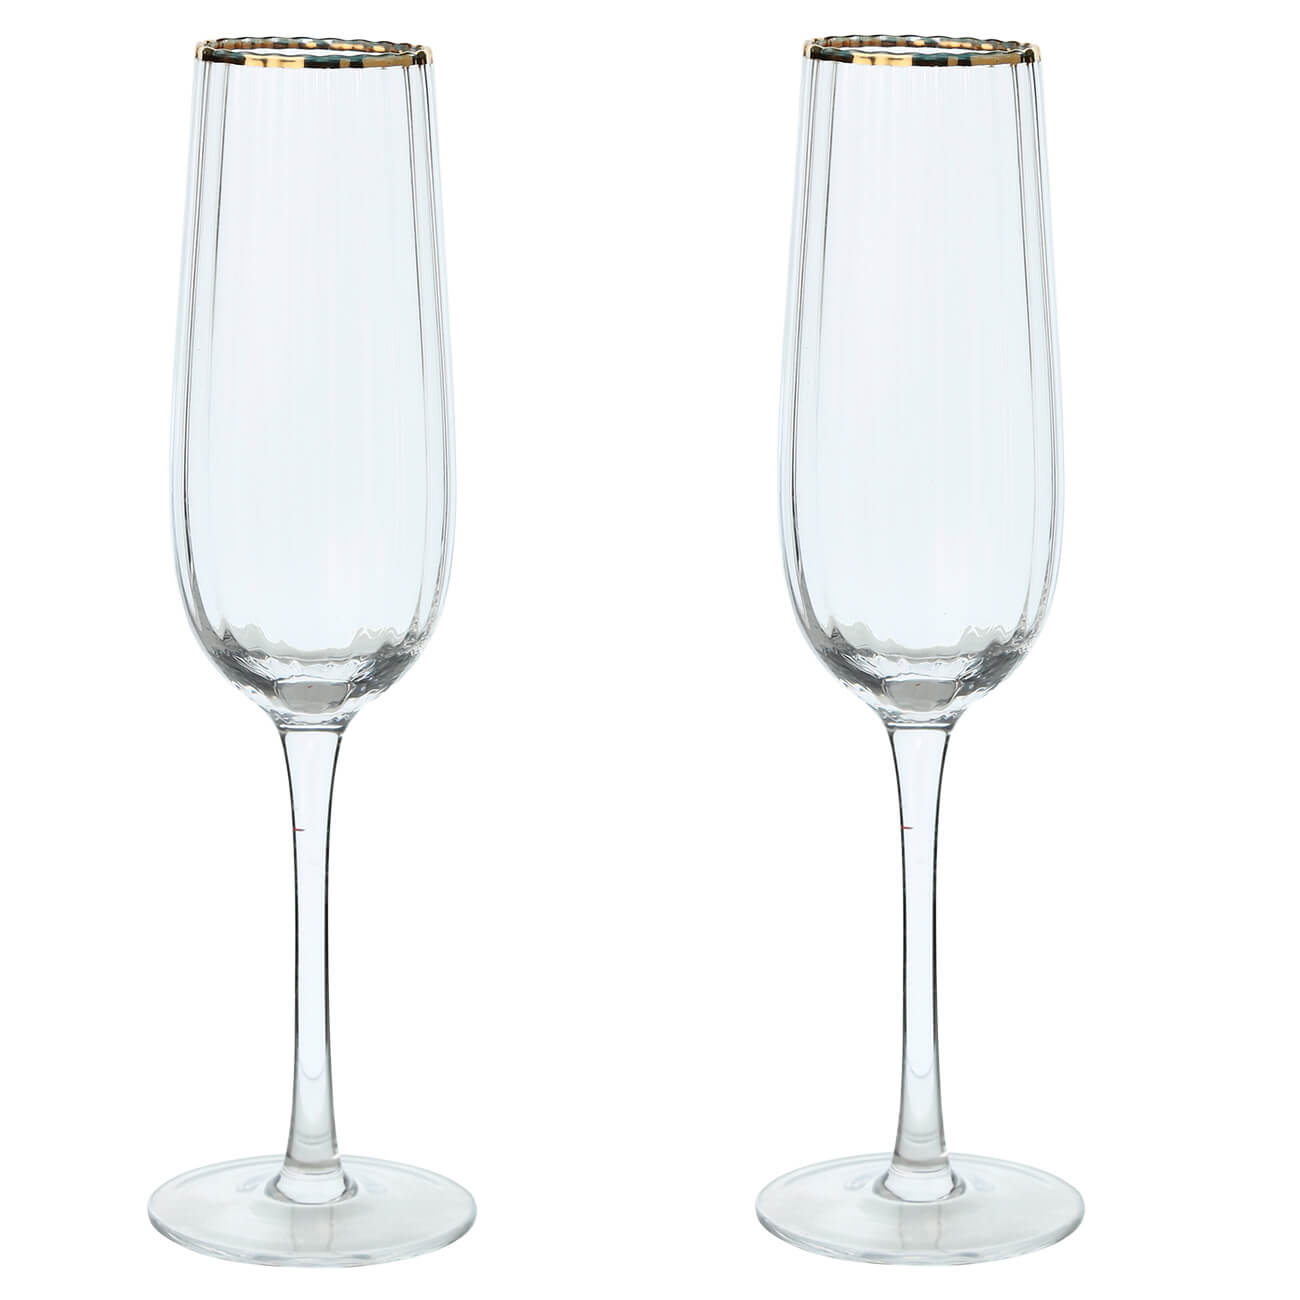 Бокал для шампанского, 275 мл, 2 шт, стекло, с золотистым кантом, Lombardy R Gold бокал шампанского сочиняйте сами